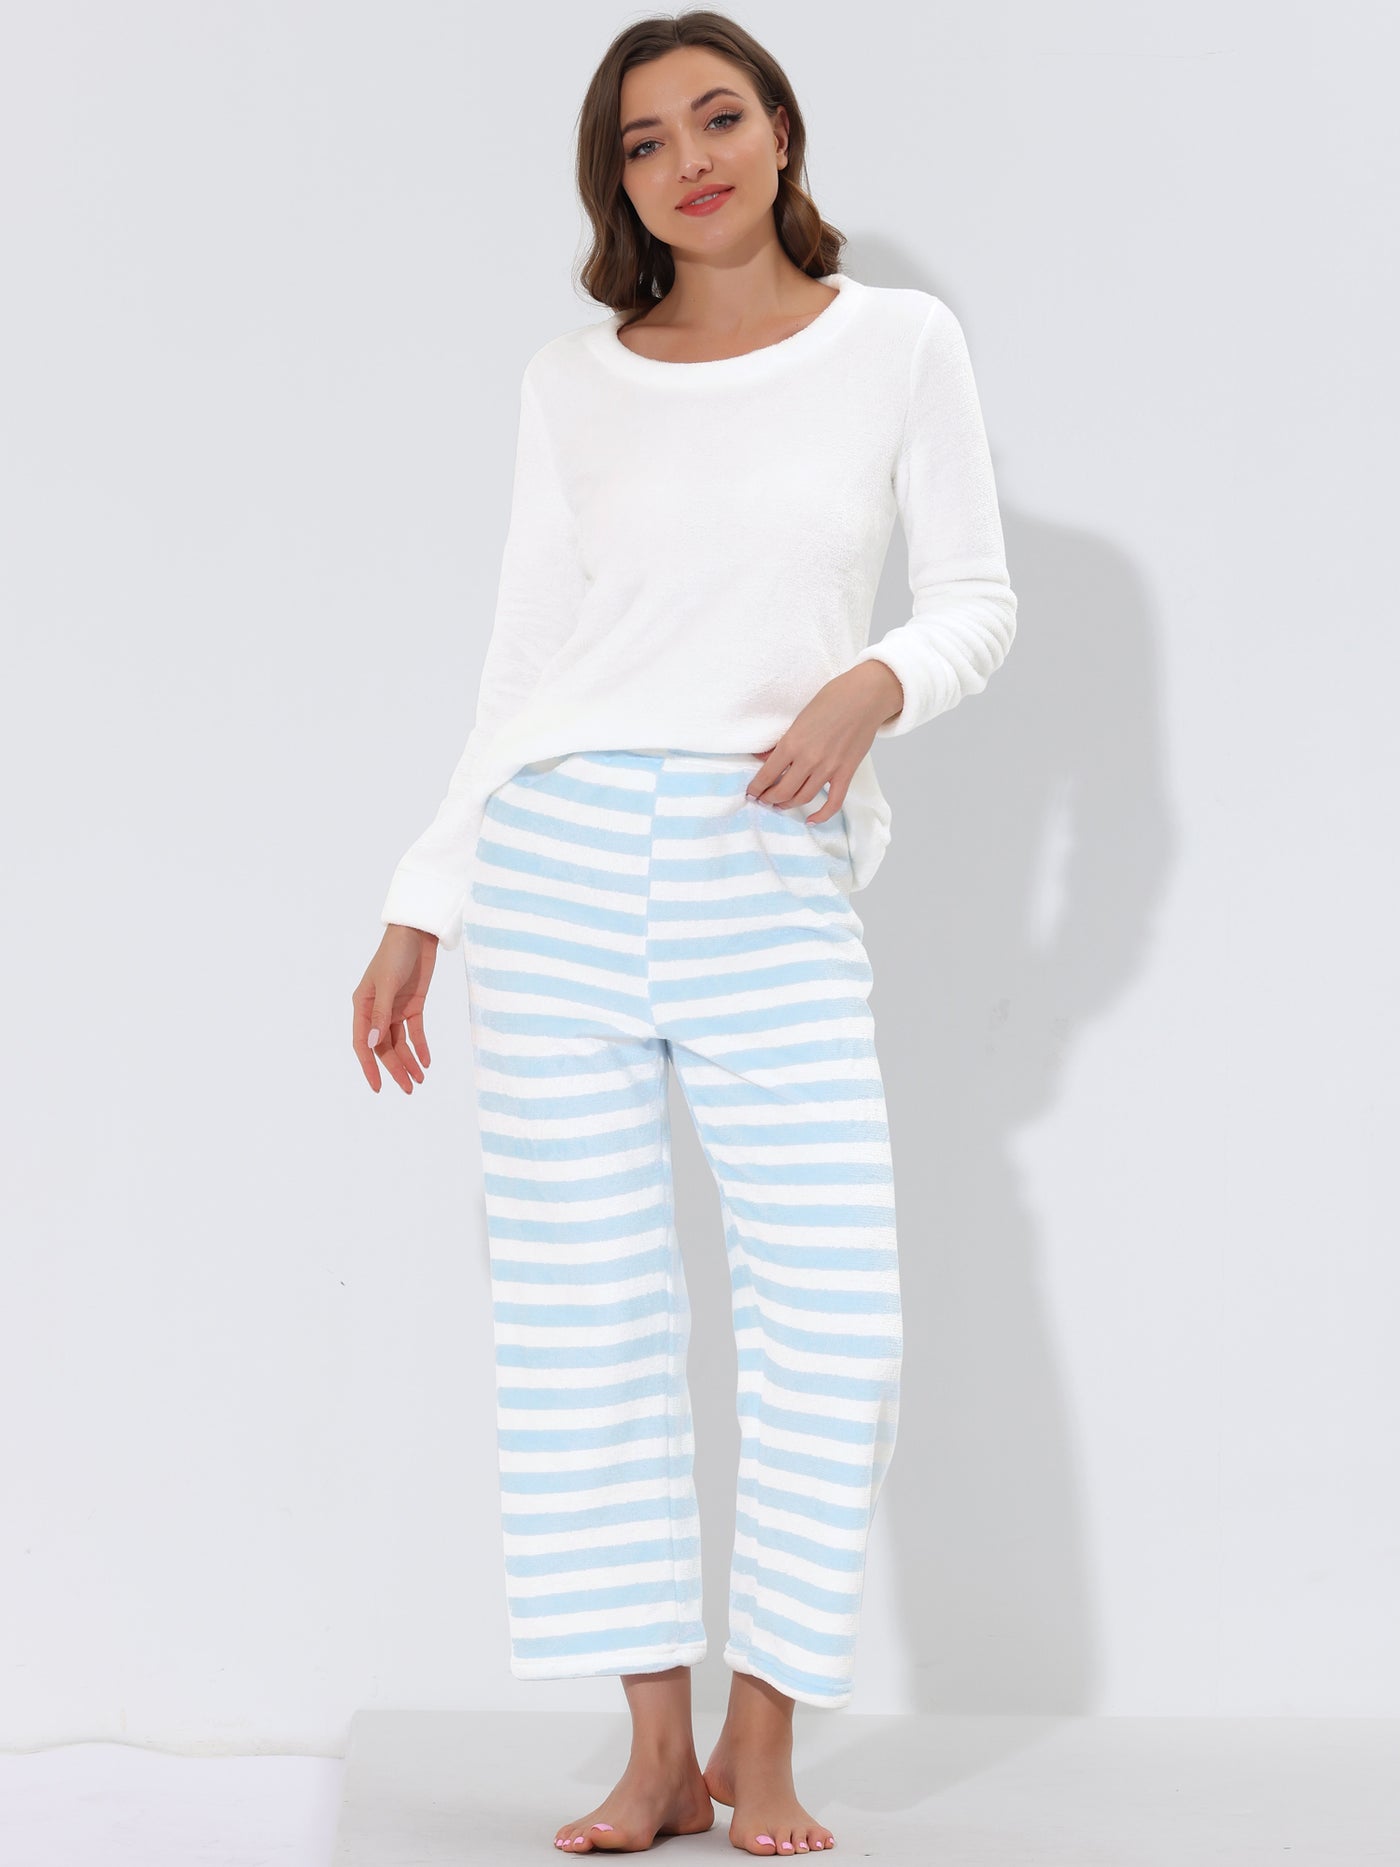 Bublédon Women's Sleepwear Lounge Nightwear Flannel Pajama Set